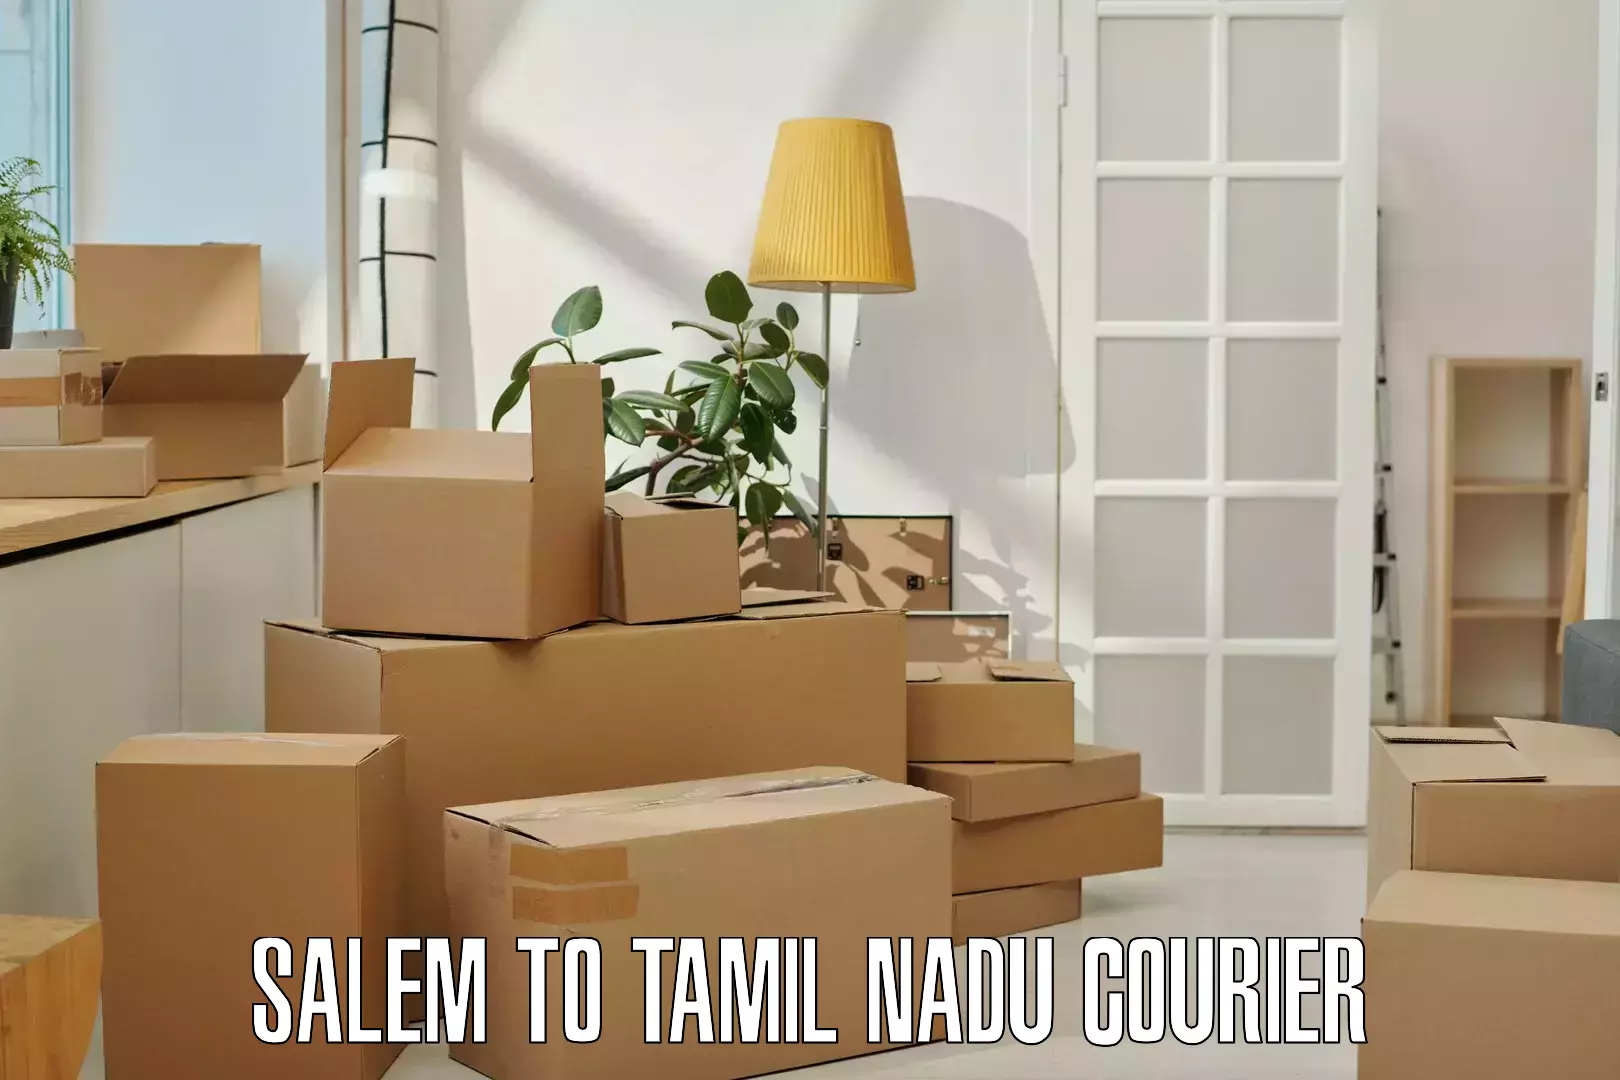 Efficient parcel tracking Salem to Tamil Nadu